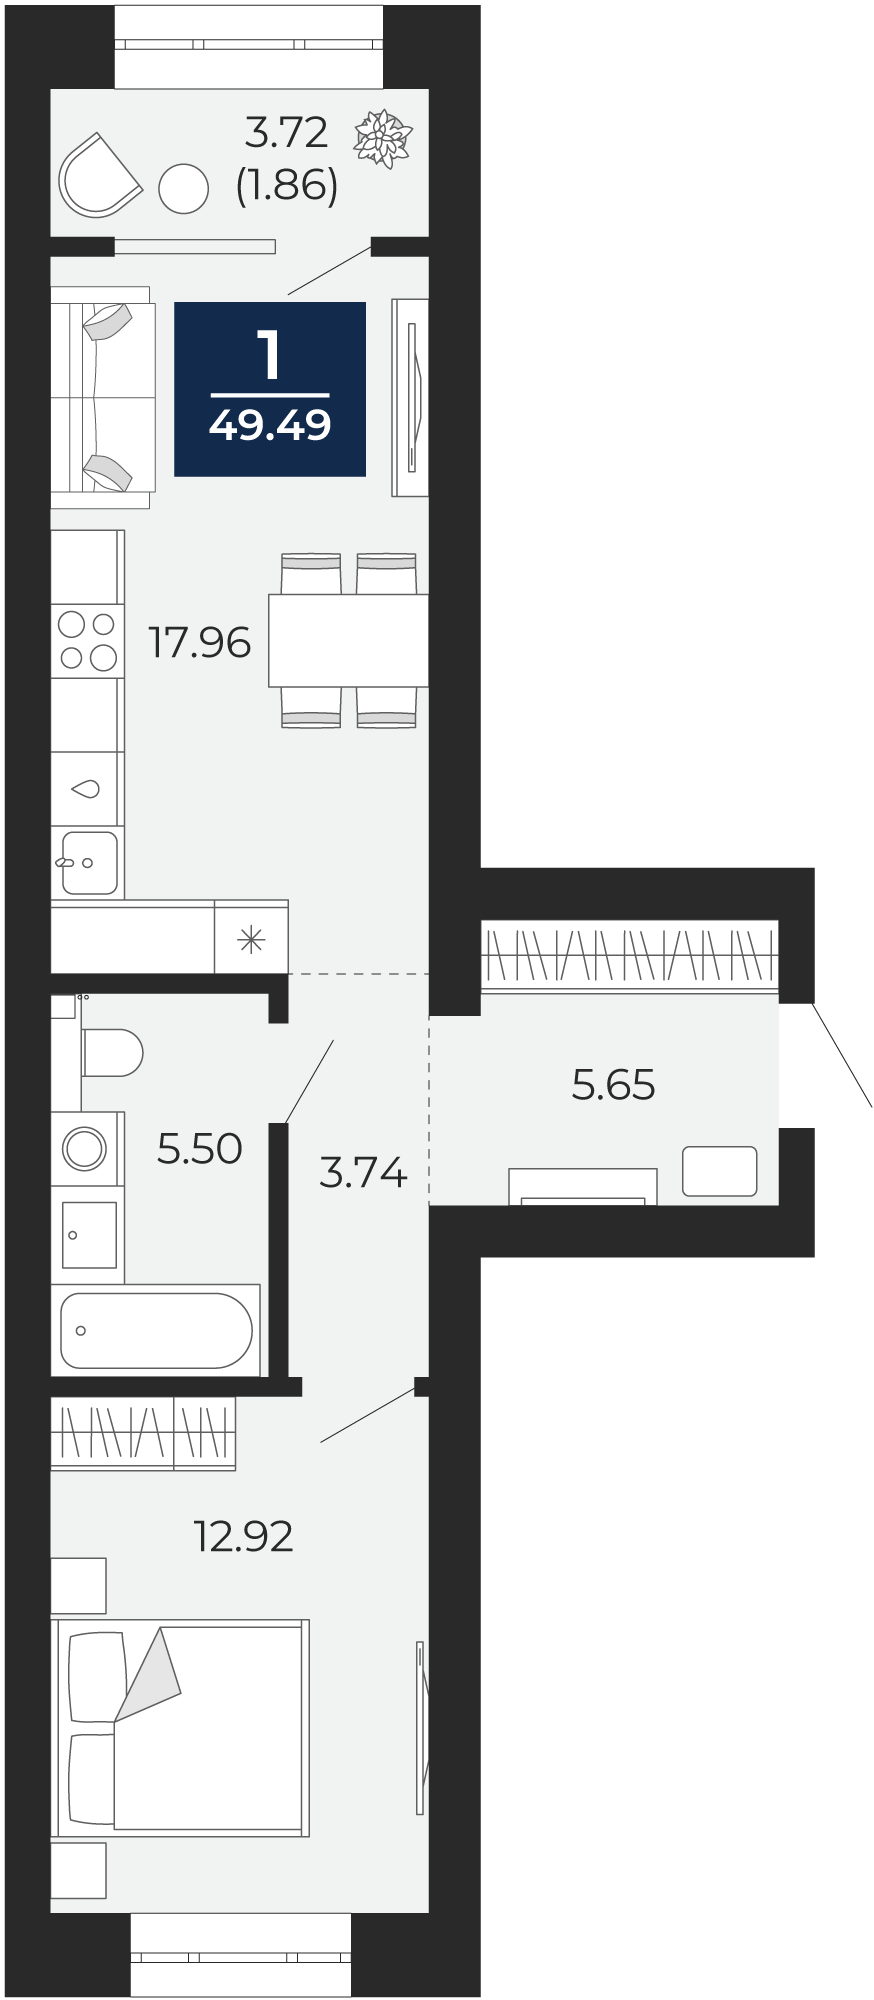 Квартира № 44, 1-комнатная, 49.49 кв. м, 8 этаж